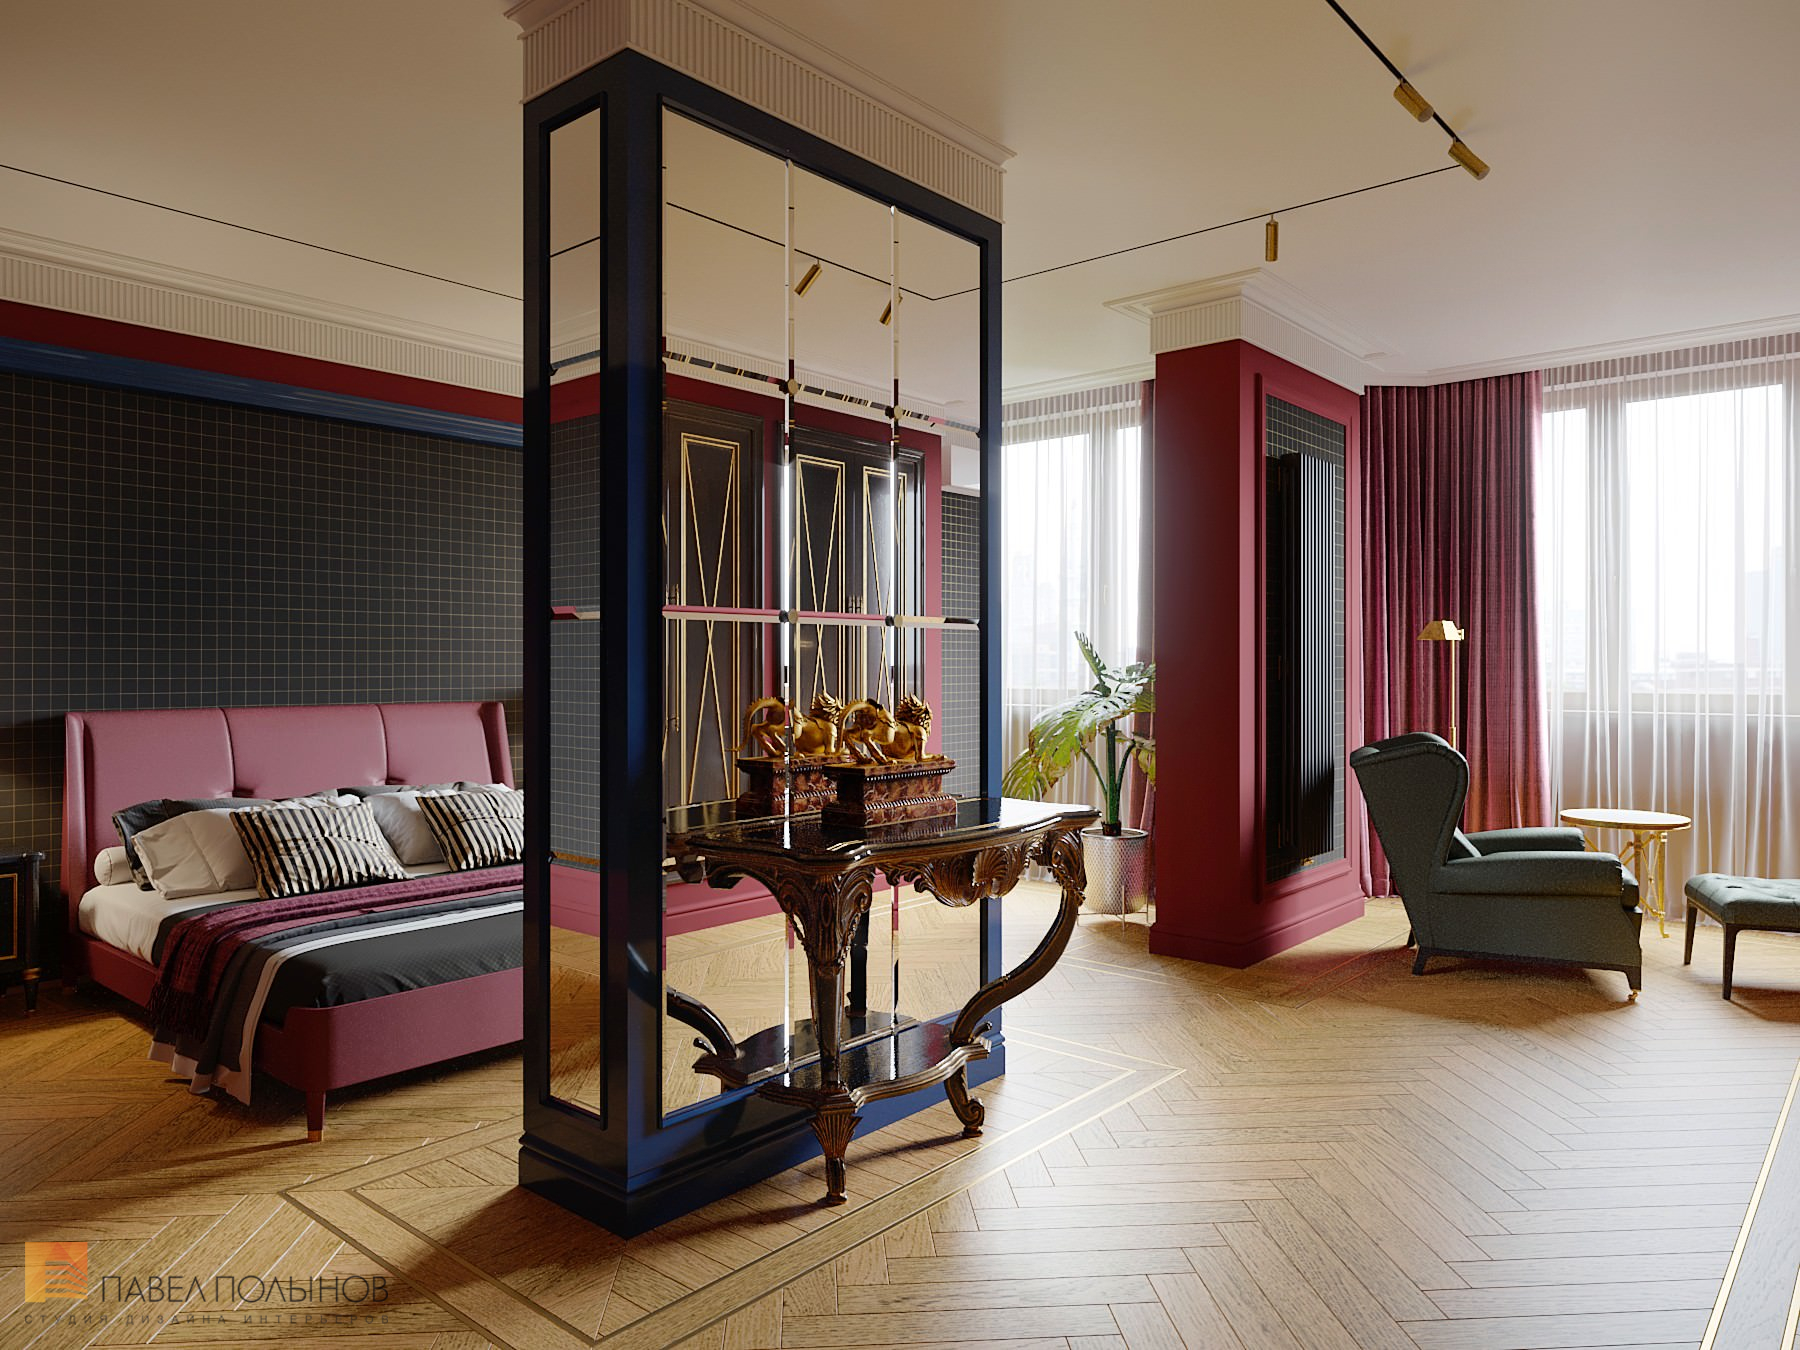 Фото интерьер спальни из проекта «Интерьер квартиры в стиле английской классики, ЖК «Патриот», 124 кв.м.»